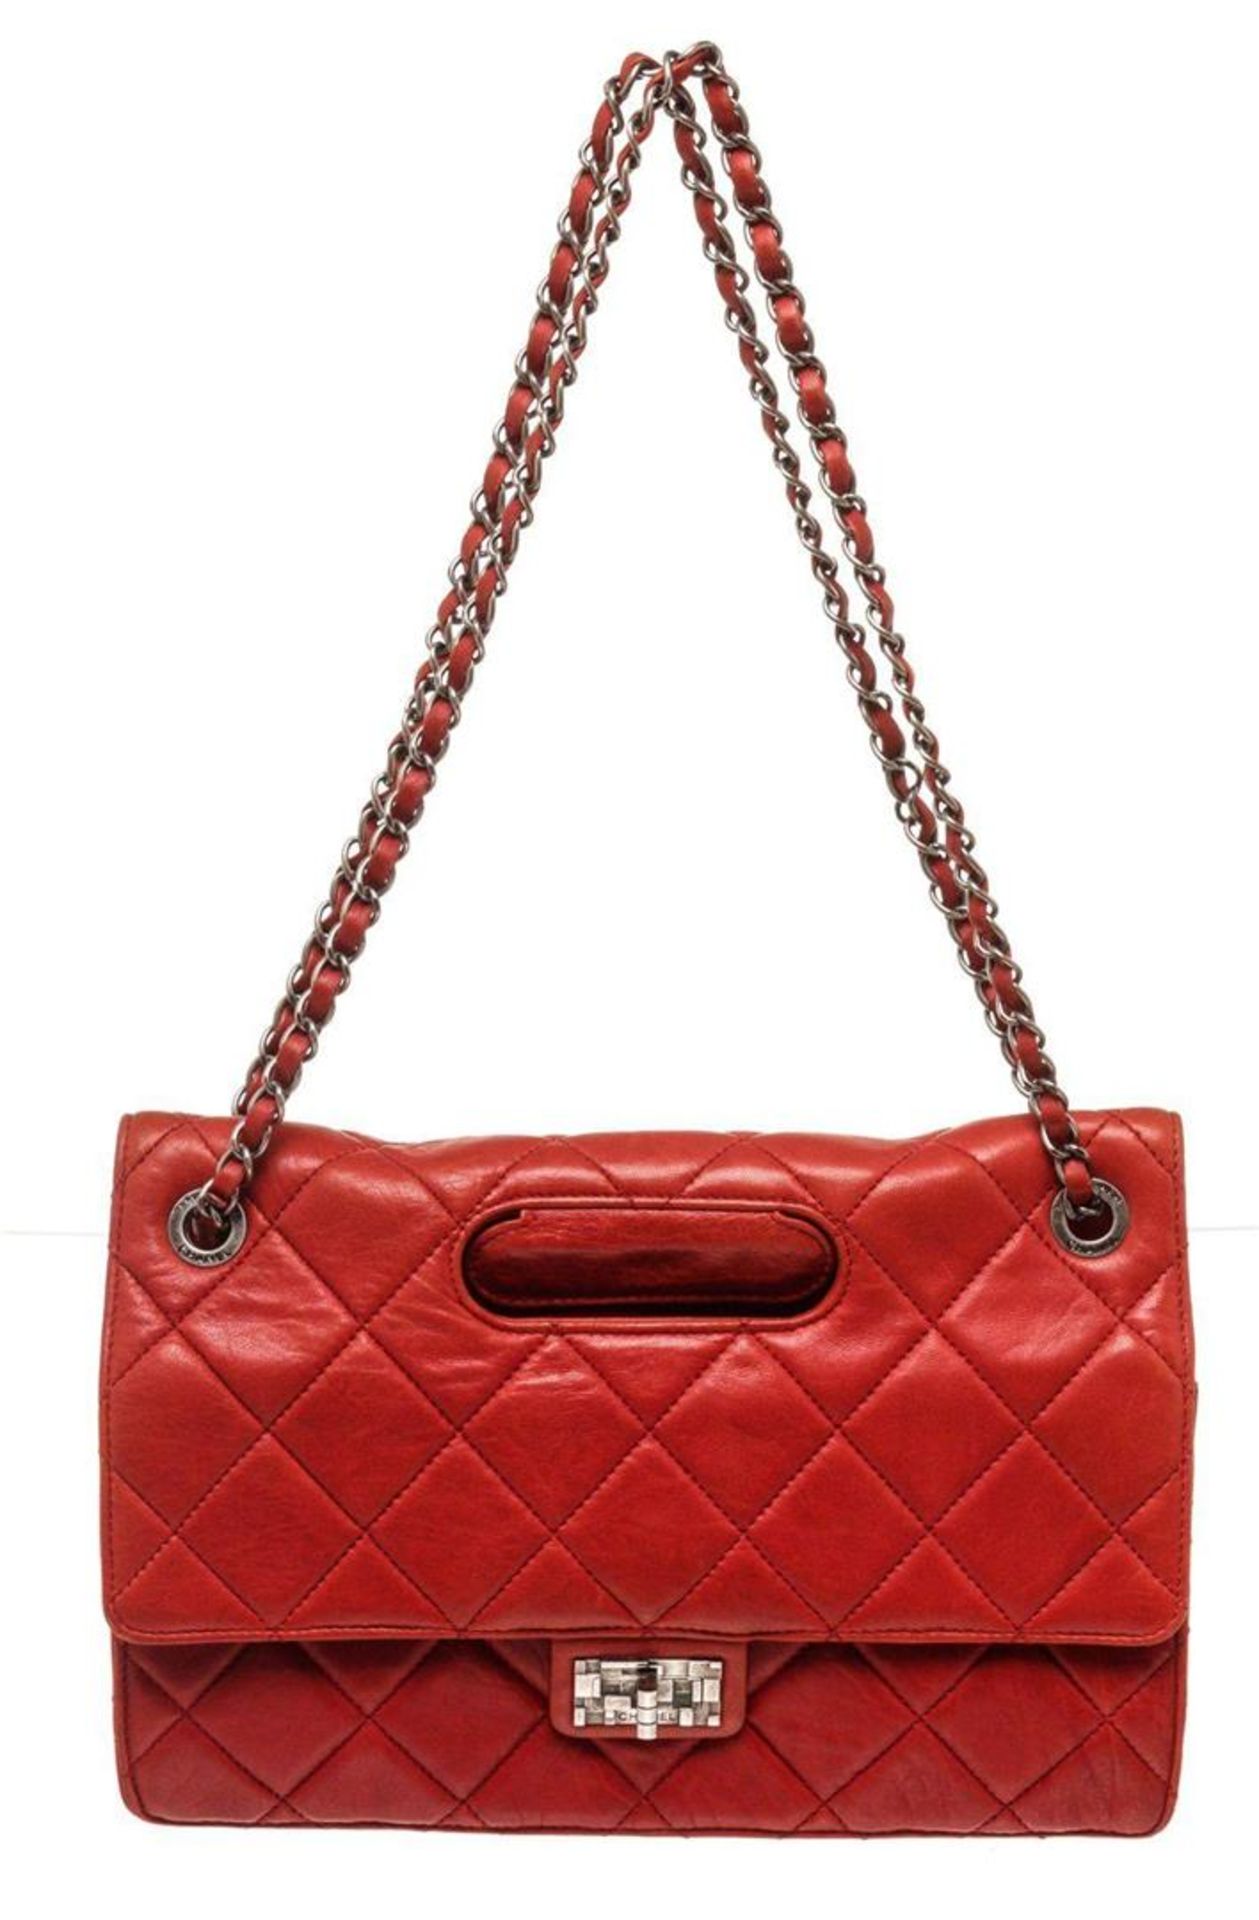 Chanel Red Leather Jumbo Shoulder Bag